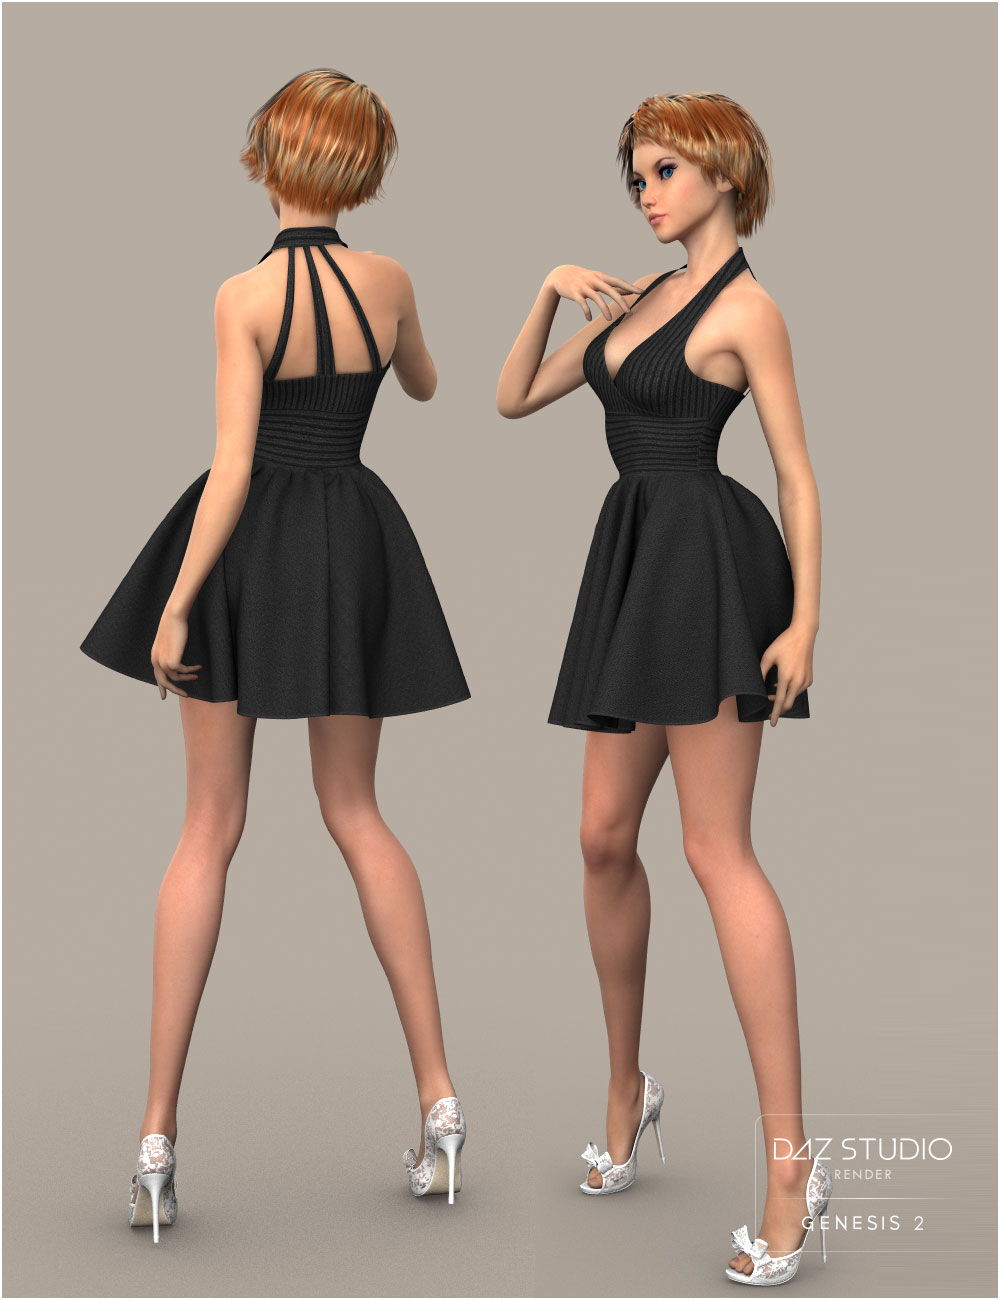 W Skirt For Genesis 2 Females Daz 3d